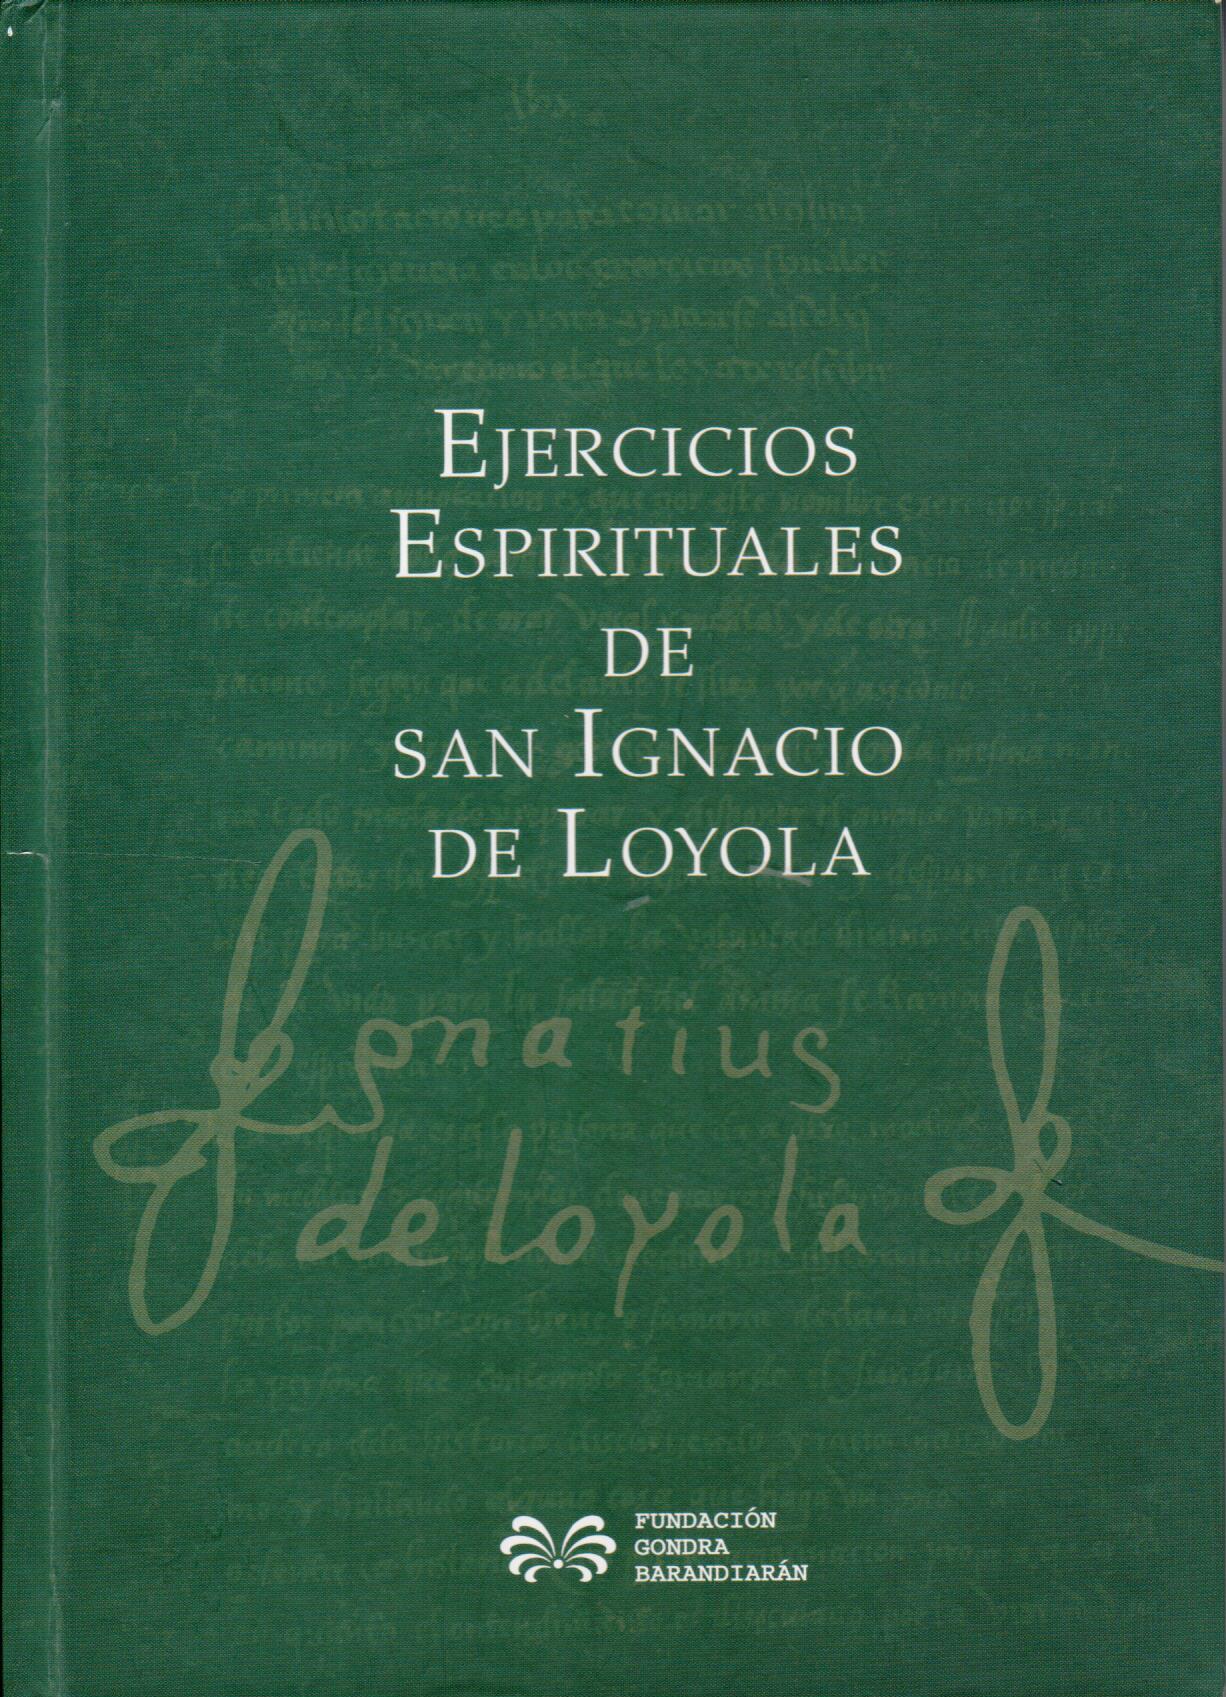 Imagen de portada del libro Ejercicios espirituales de san Ignacio de Loyola